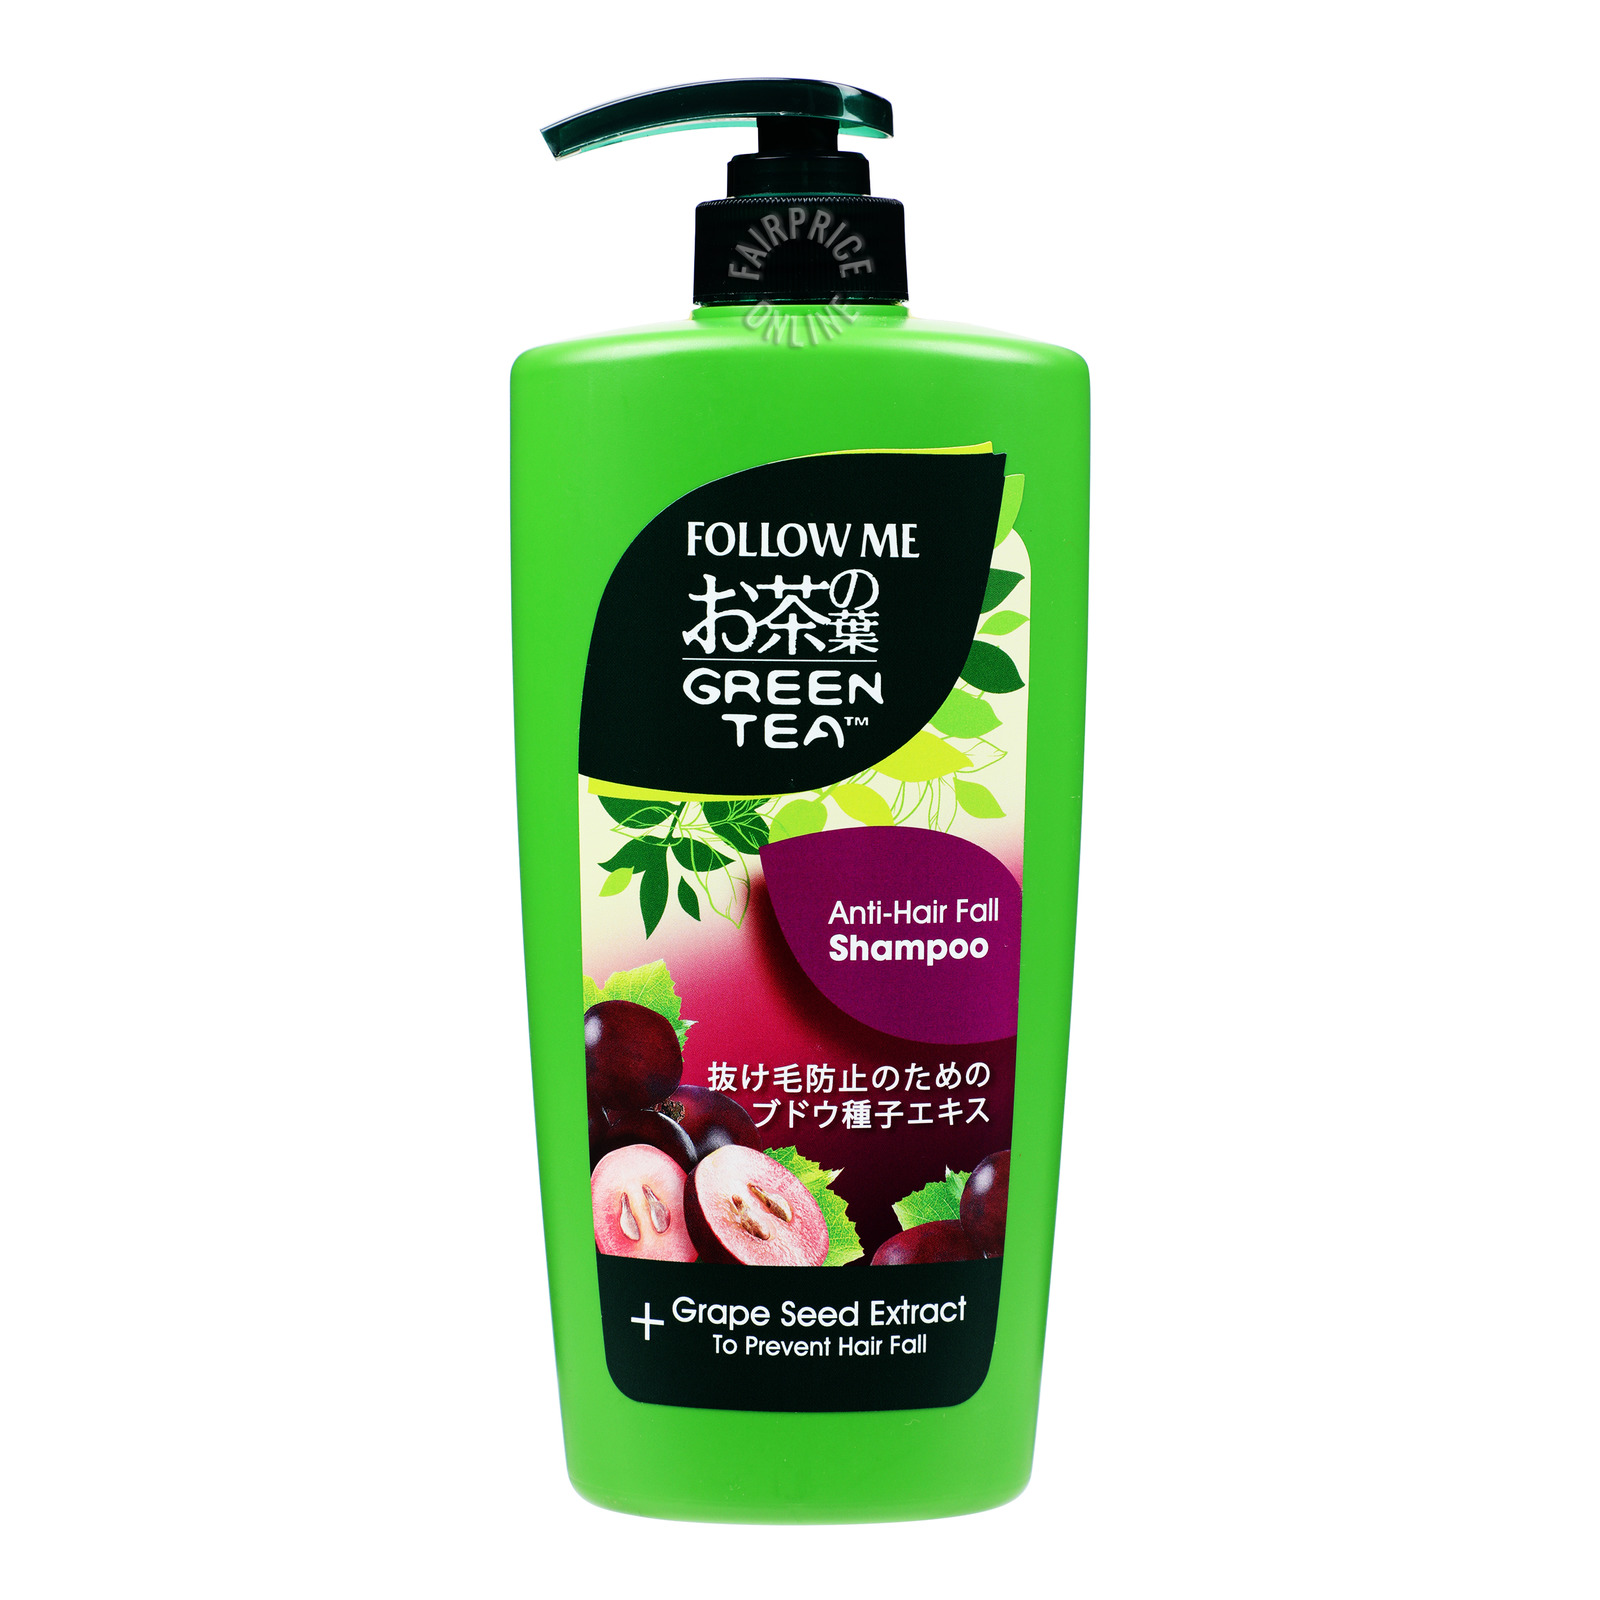 Follow Me Green Tea Shampoo - Anti-Hair Fall